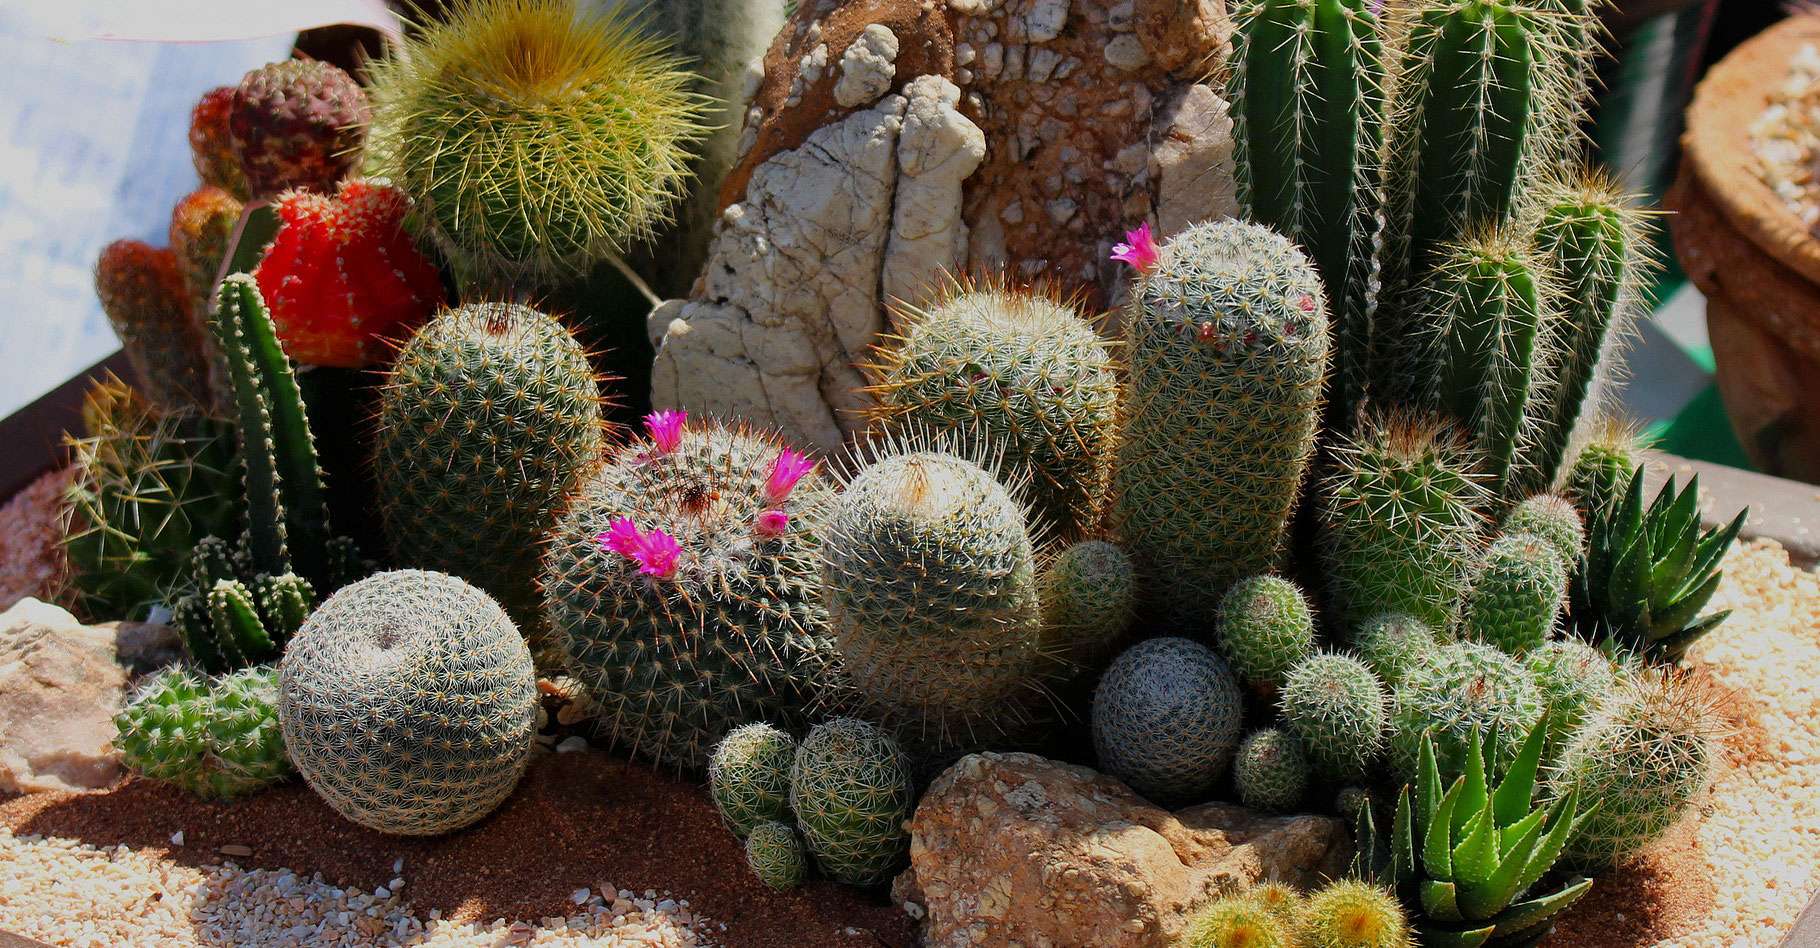 Cactus et plantes grasses : culture, arrosage et entretien